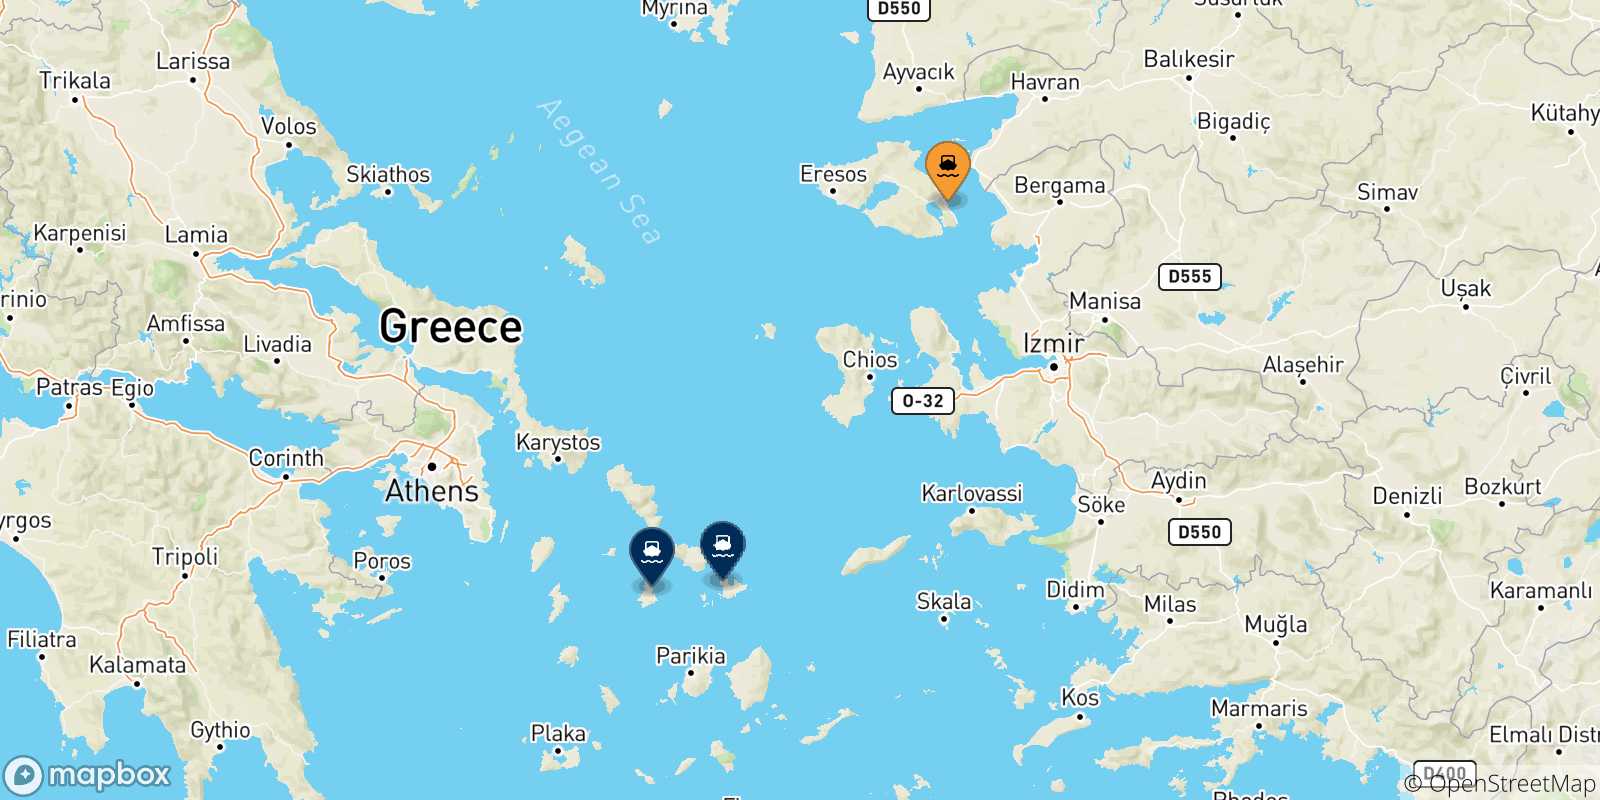 Mappa delle possibili rotte tra Mitilini (Lesvos) e le Isole Cicladi